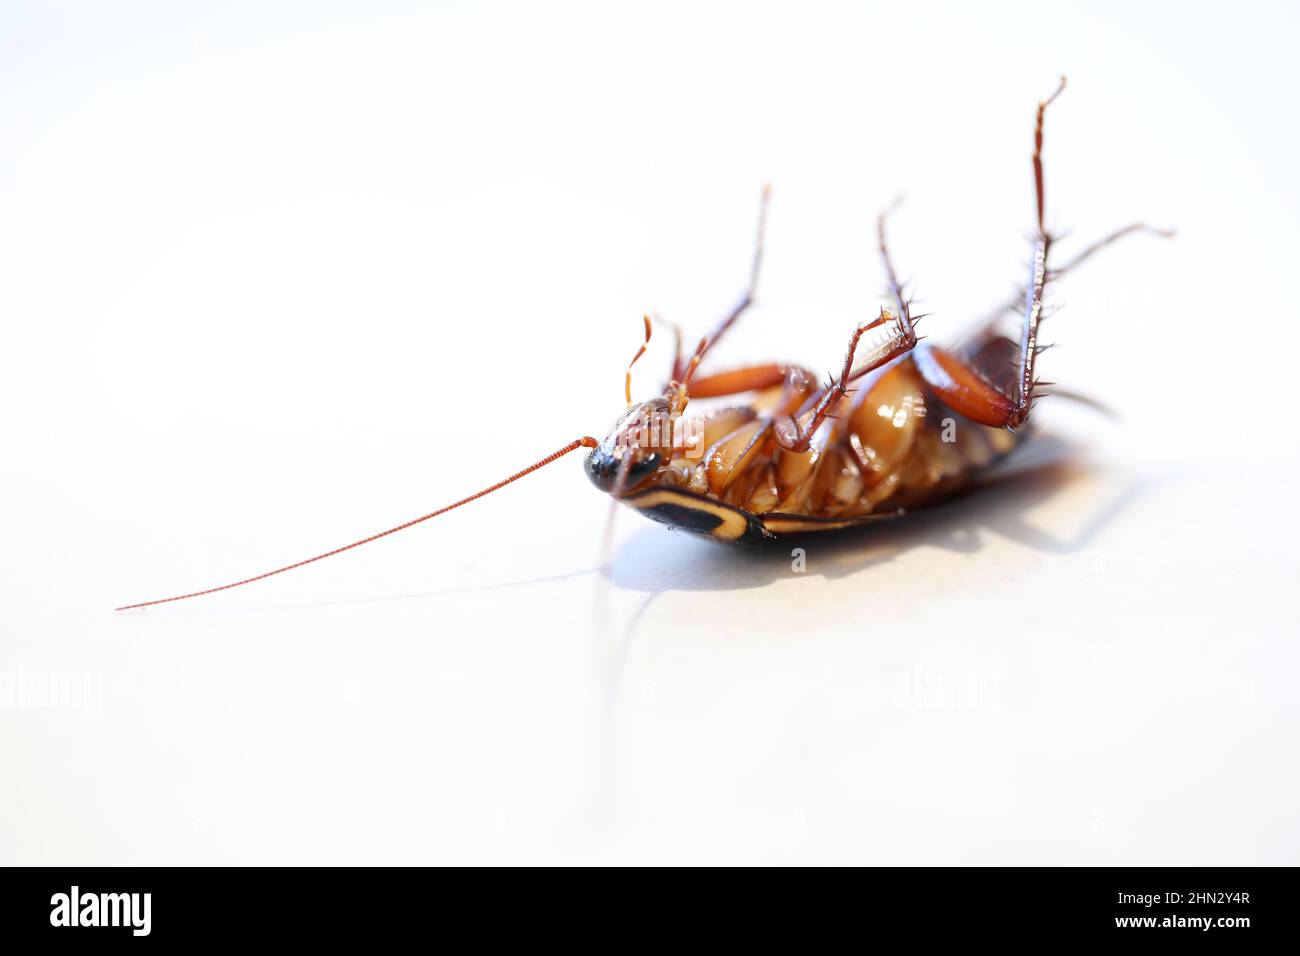 Une vue macro 3qtr de gros plan d'un insecte de cafard frais mort ou mourant posé sur son dos. Isolé sur un fond blanc Uni Banque D'Images